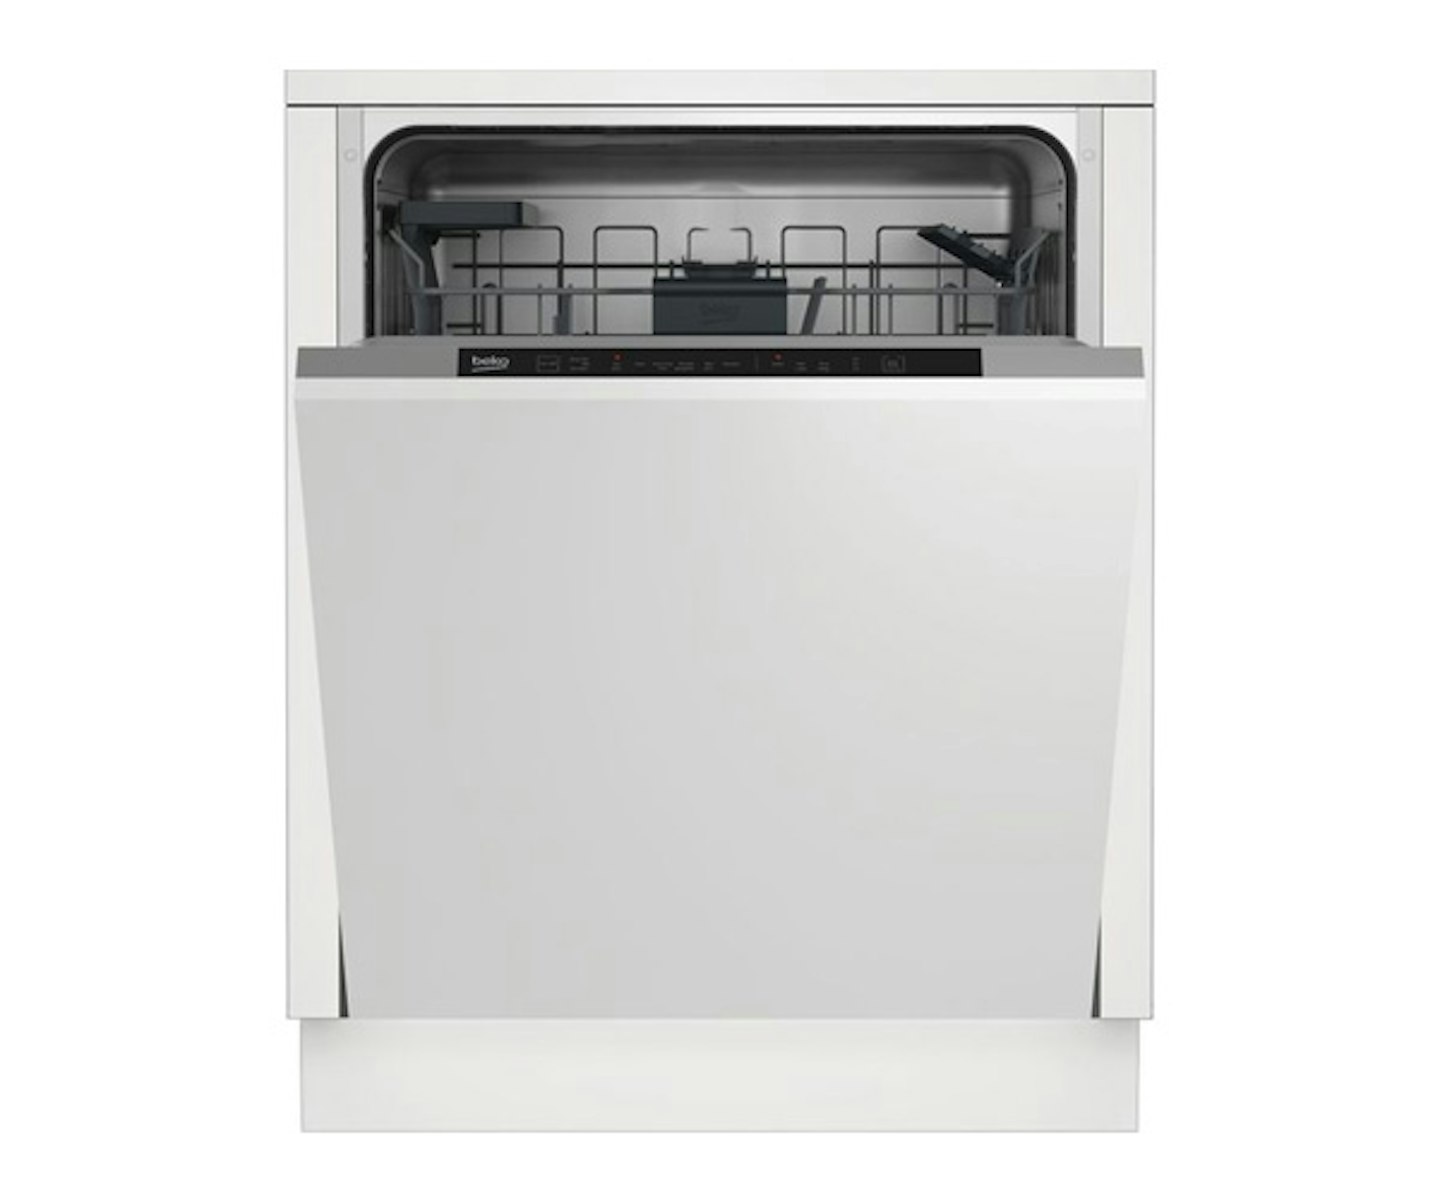 Beko DIN16430 Fully Integrated Standard Dishwasher